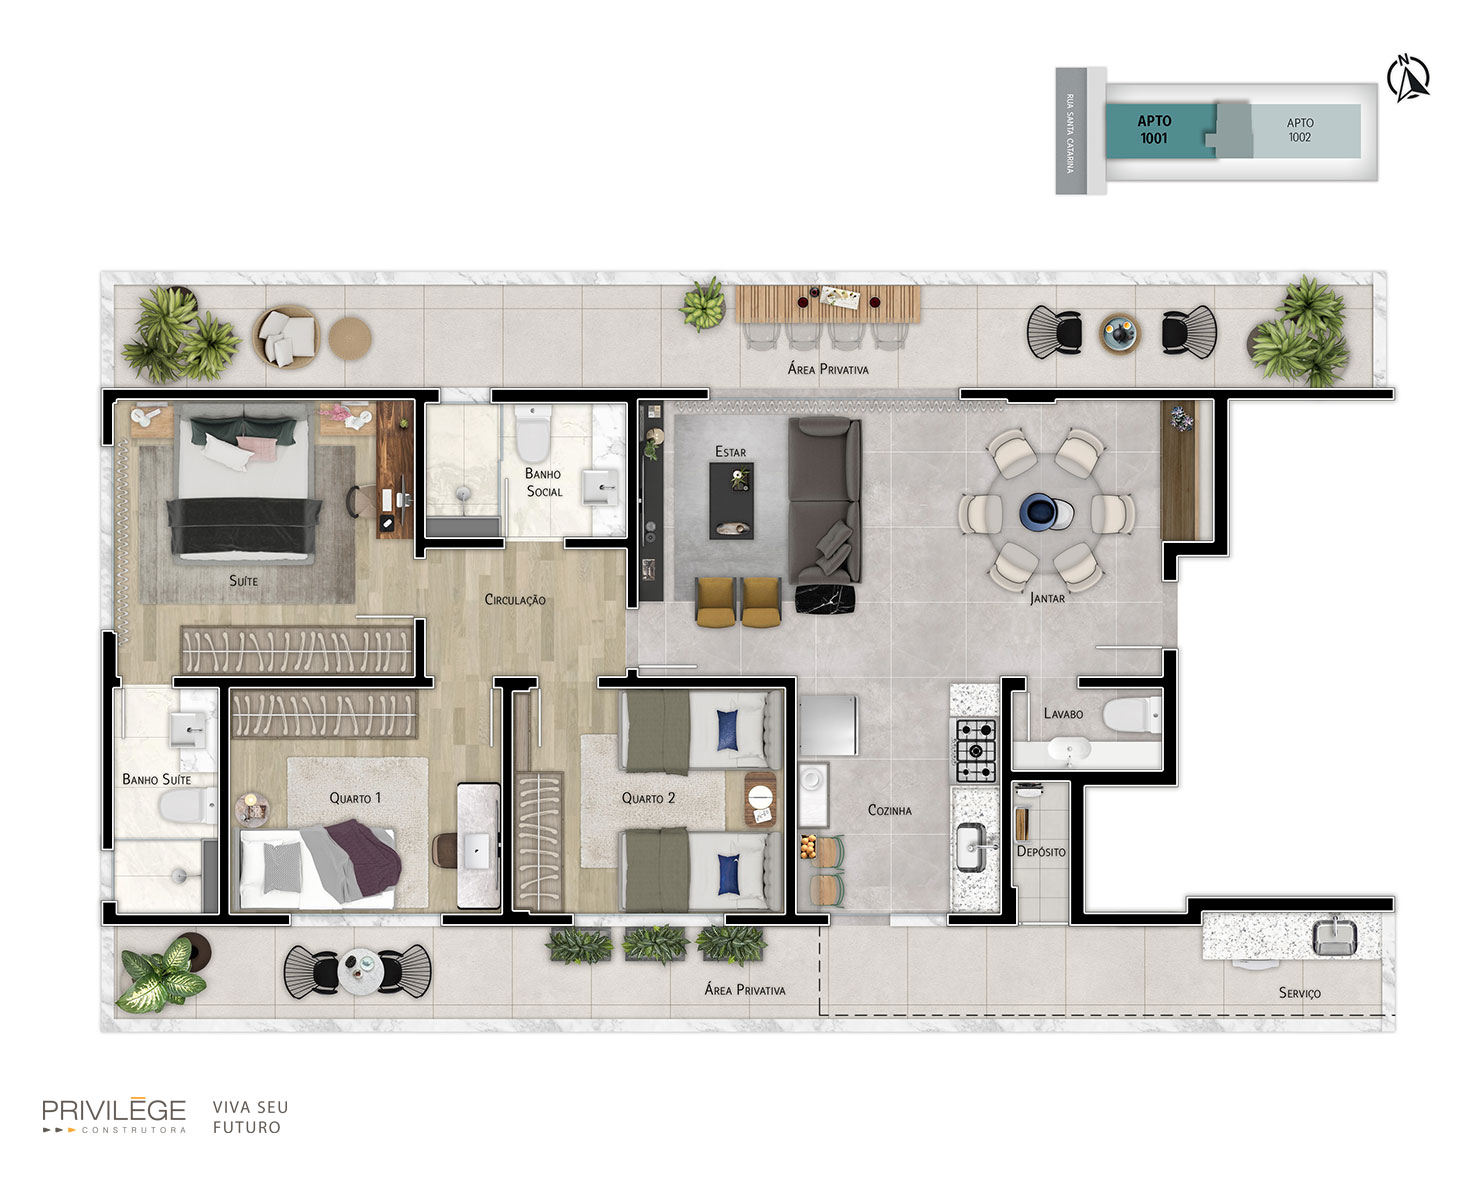 Apartamento terrace 3 quartos com cozinha integrada – 1001